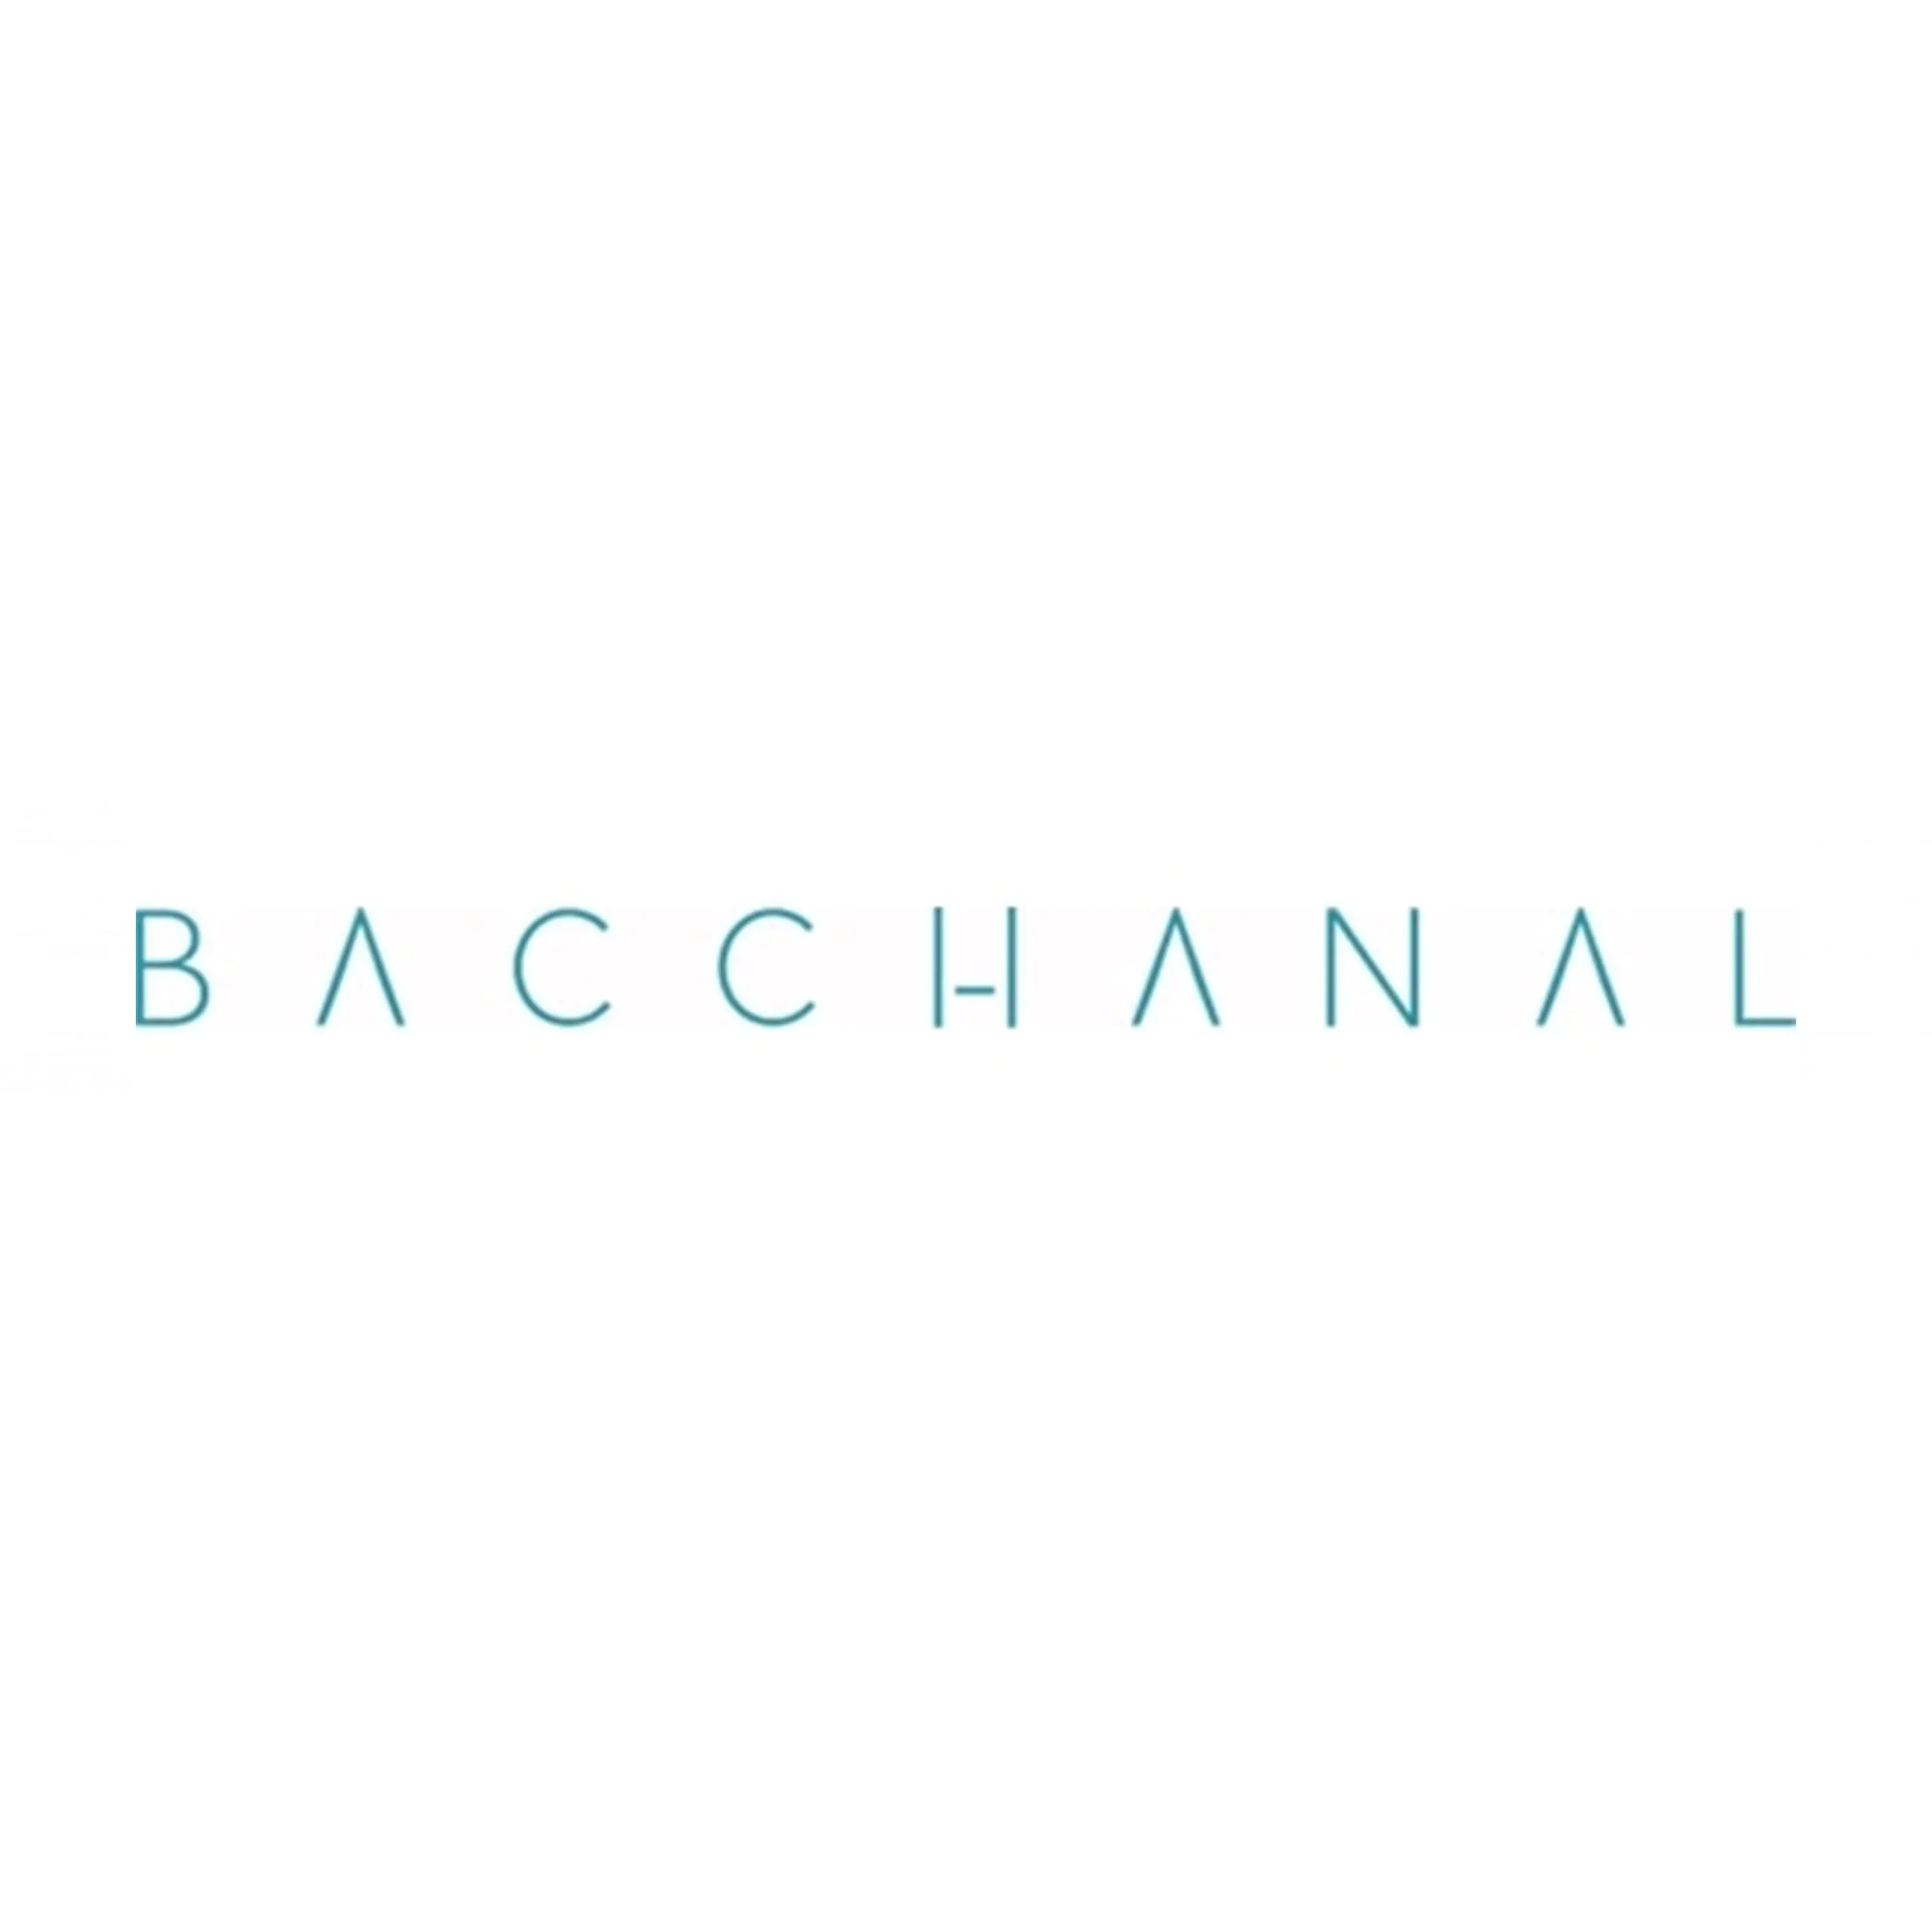 Bacchanal - Coming Soon in UAE